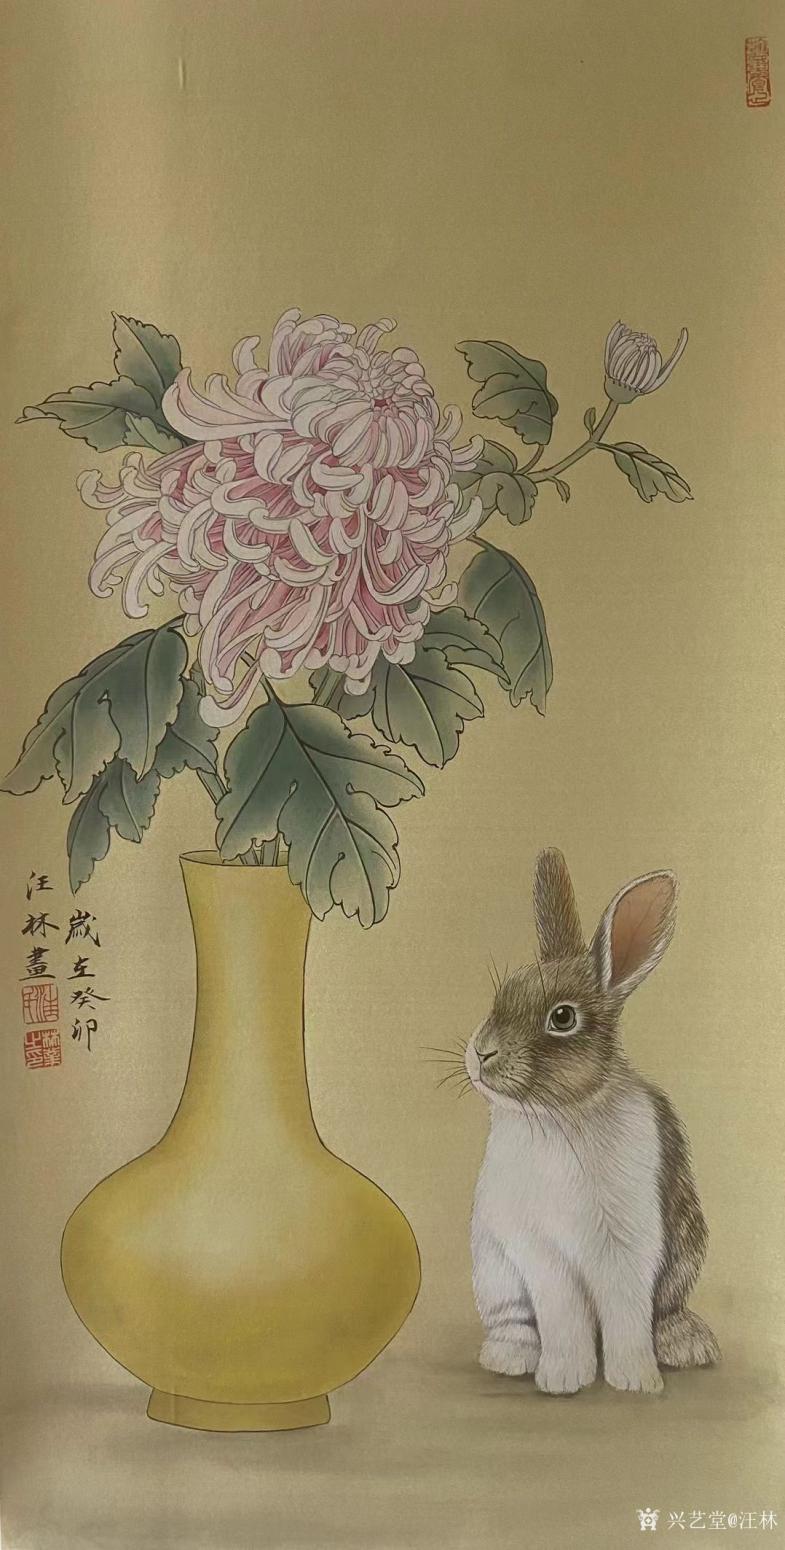 汪林国画作品《工笔-兔菊》